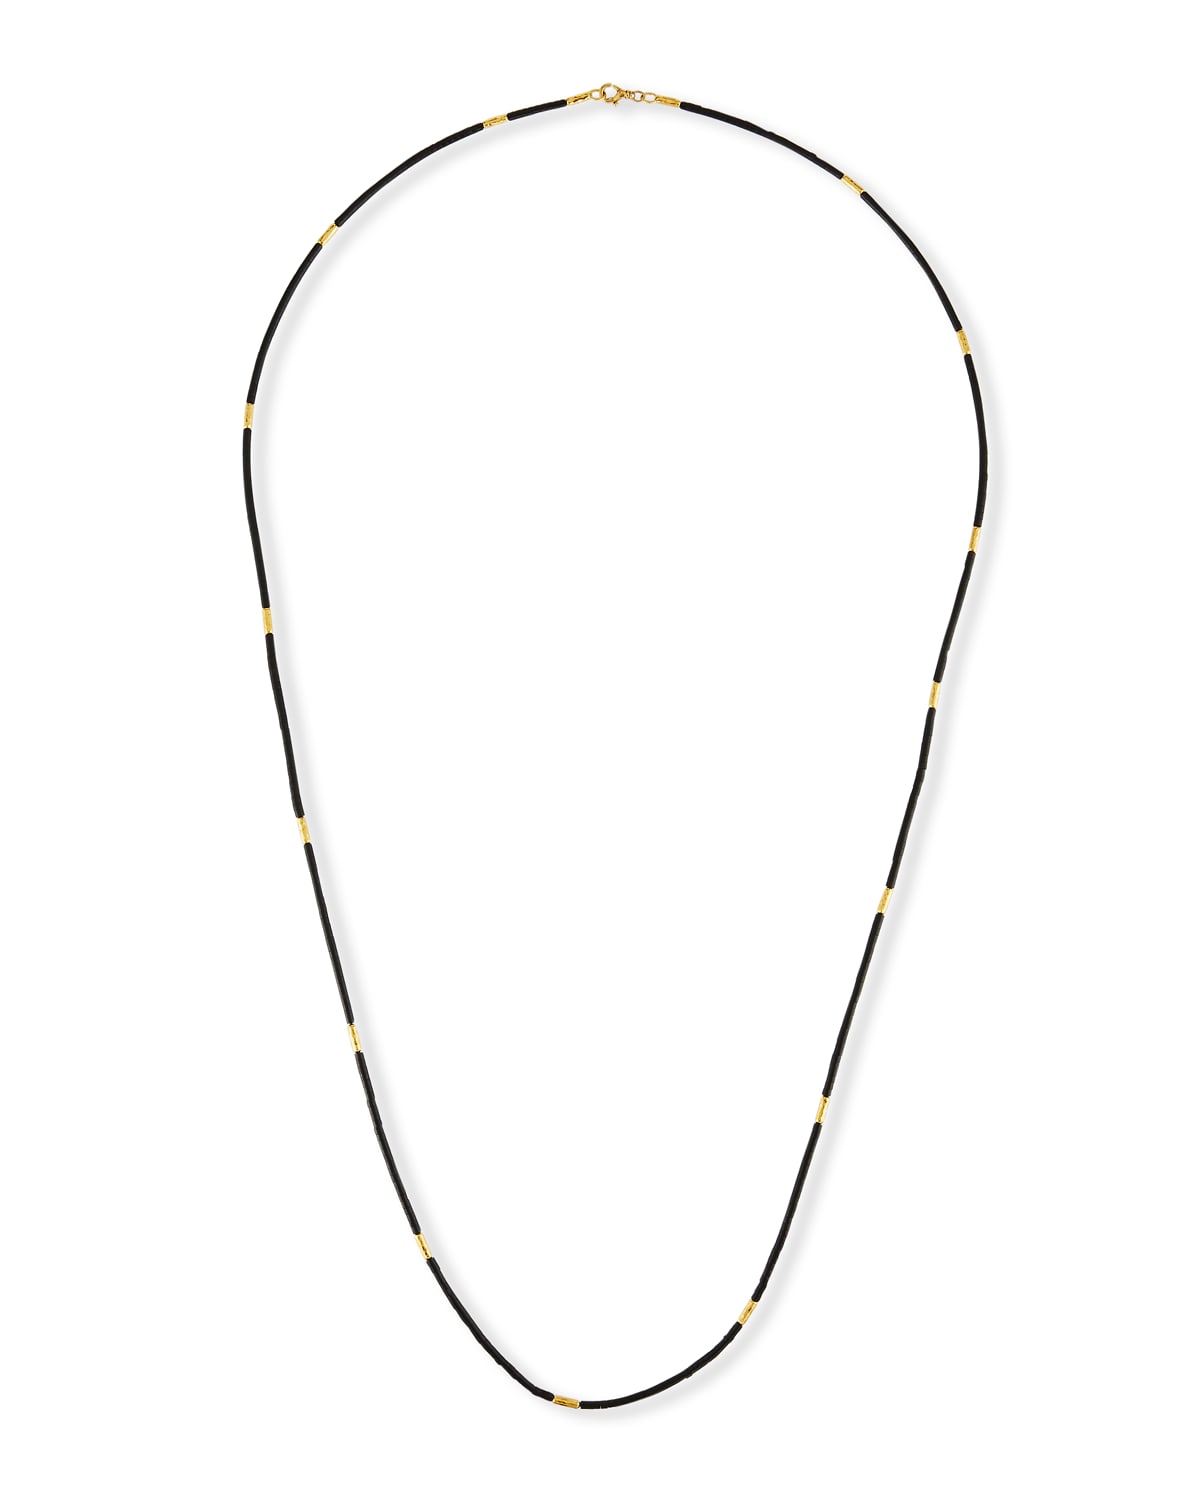 Single-Strand Jet Bead Necklace, 36"L